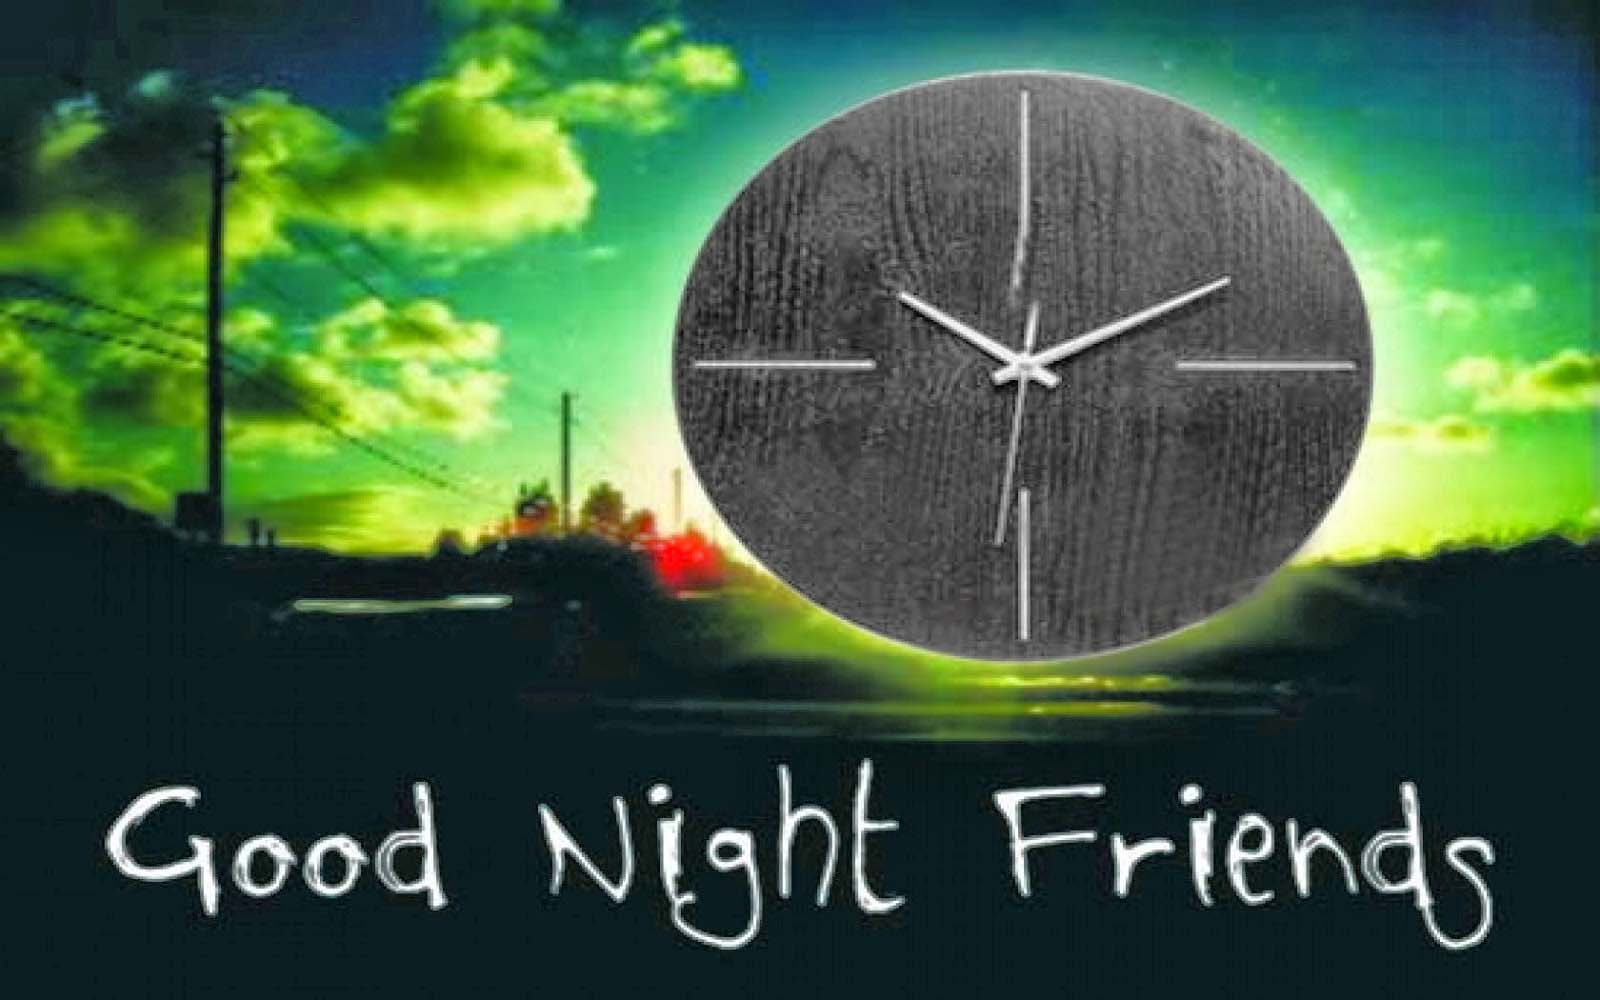 buona notte amici sfondi,natura,cielo,verde,atmosfera,font